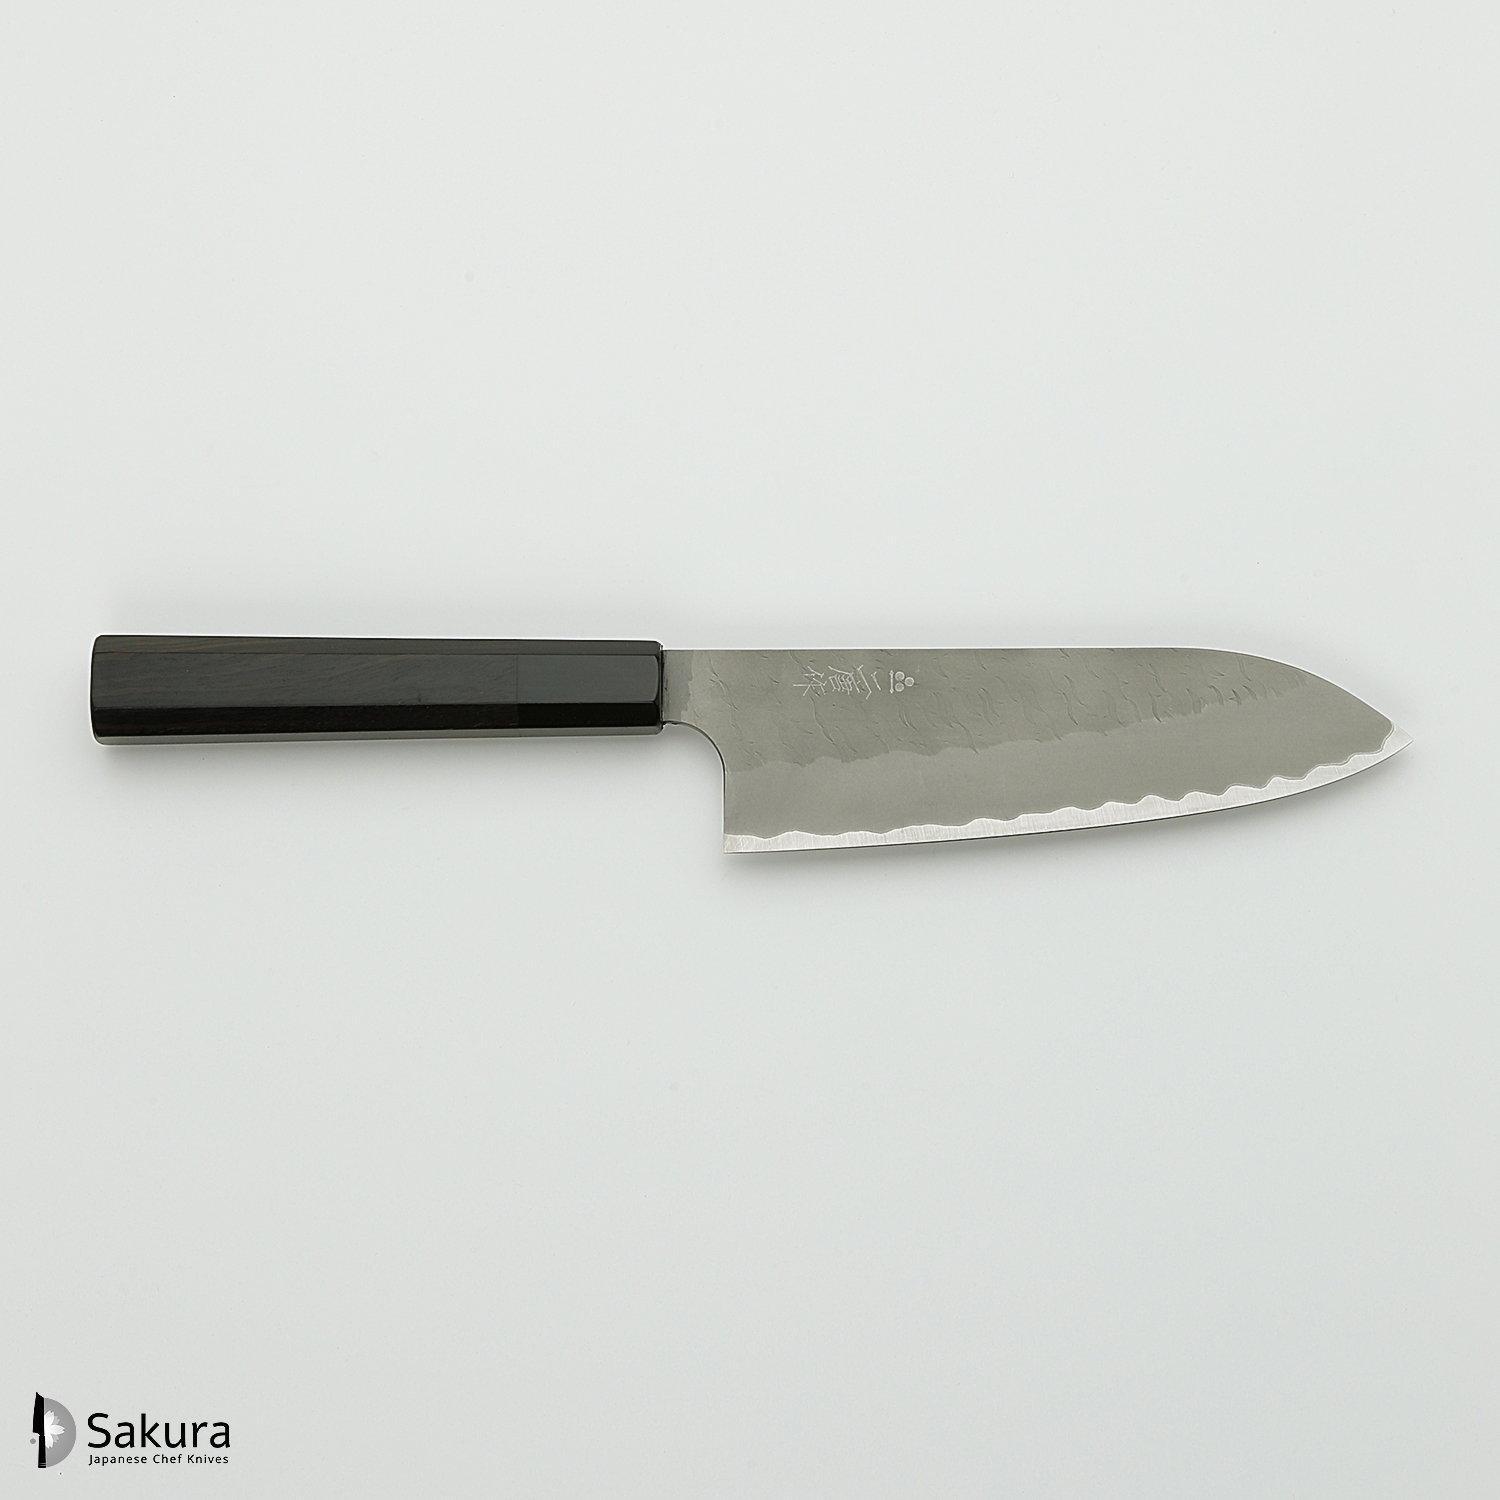 סכין רב-תכליתית סָנטוֹקוּ 165מ״מ מחושלת בעבודת יד 3 שכבות: פלדת פחמן יפנית מתקדמת מסוג Aogami Super עטופה פלדת אל-חלד גימור מט מלוטש עם ריקוע פטיש ניגארה יפן